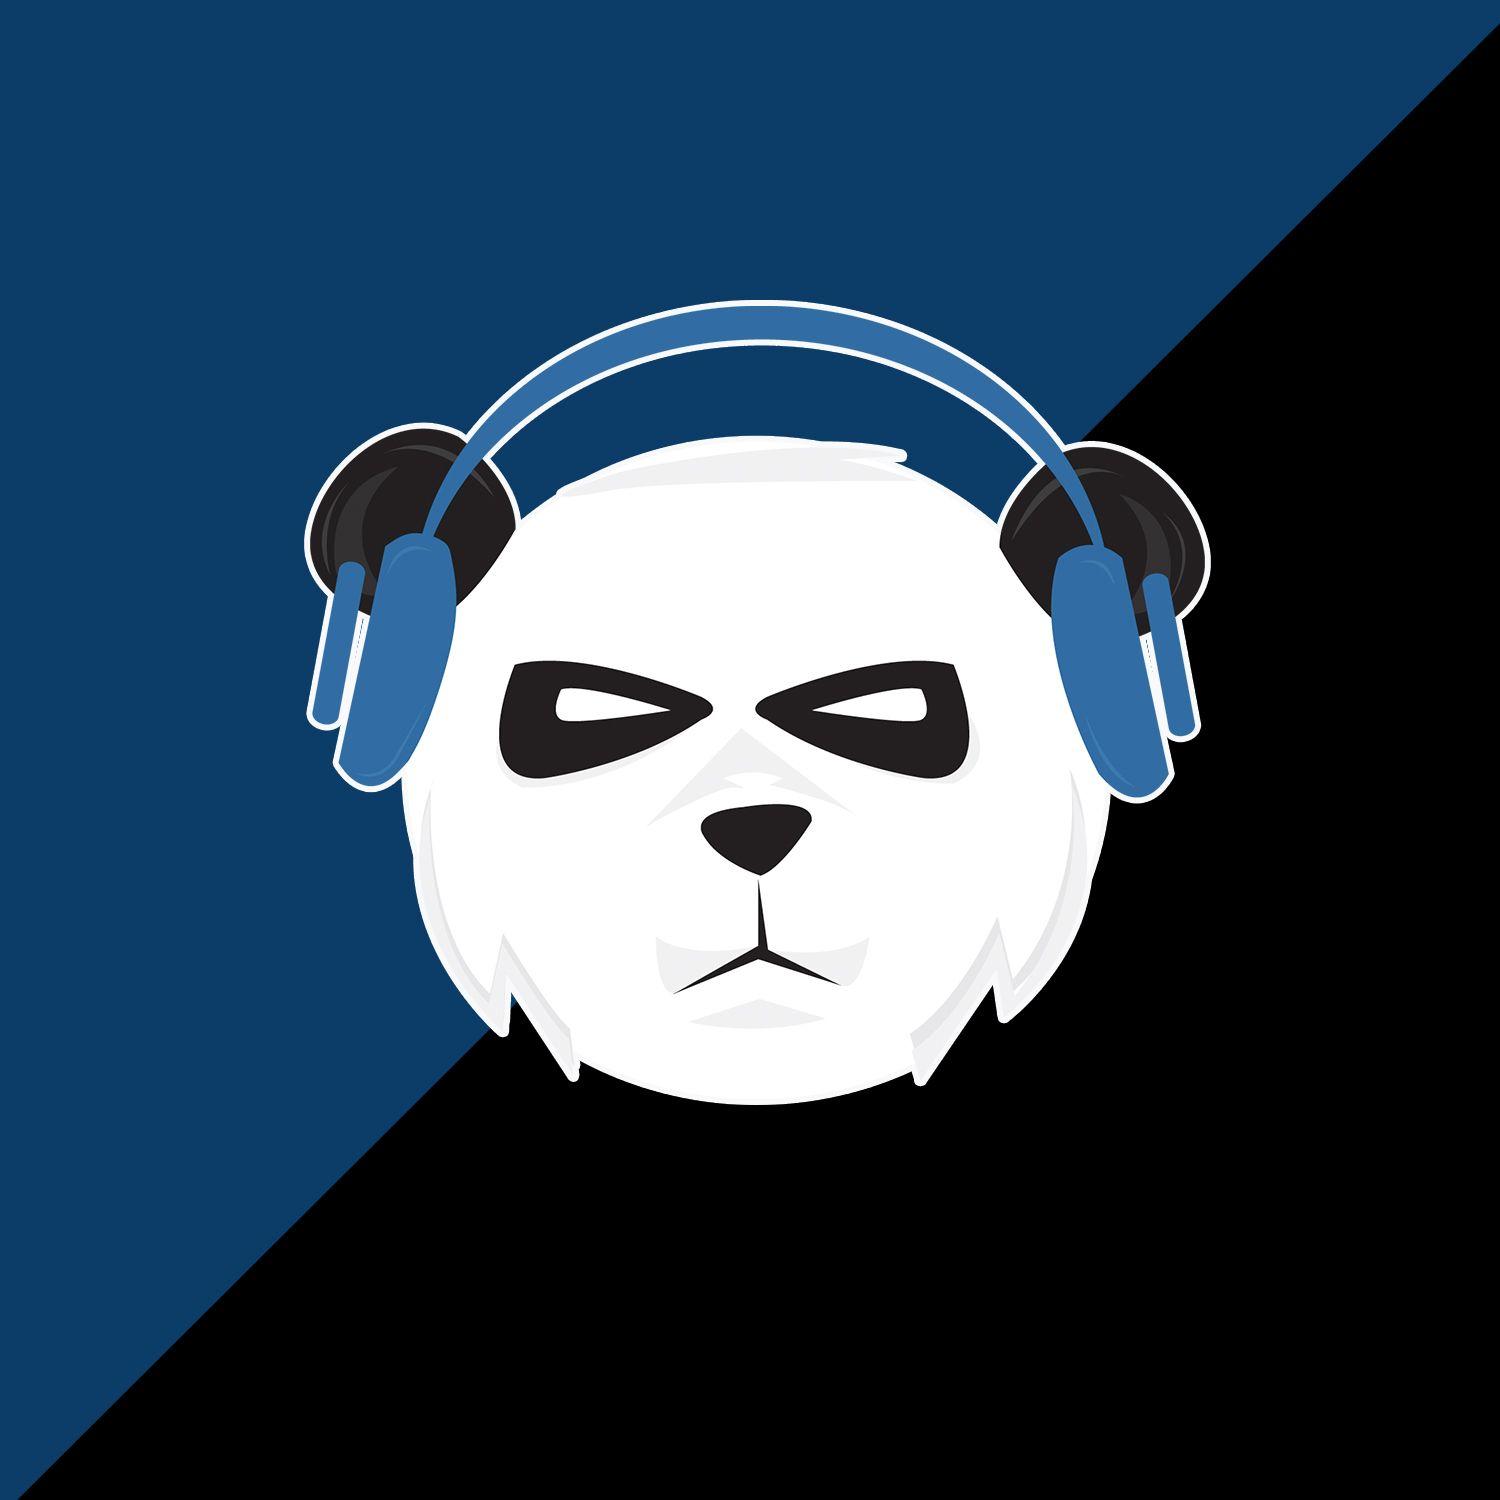 Cool Panda Gaming Logo - Panda eSports Gaming logo Design Gamer logo design